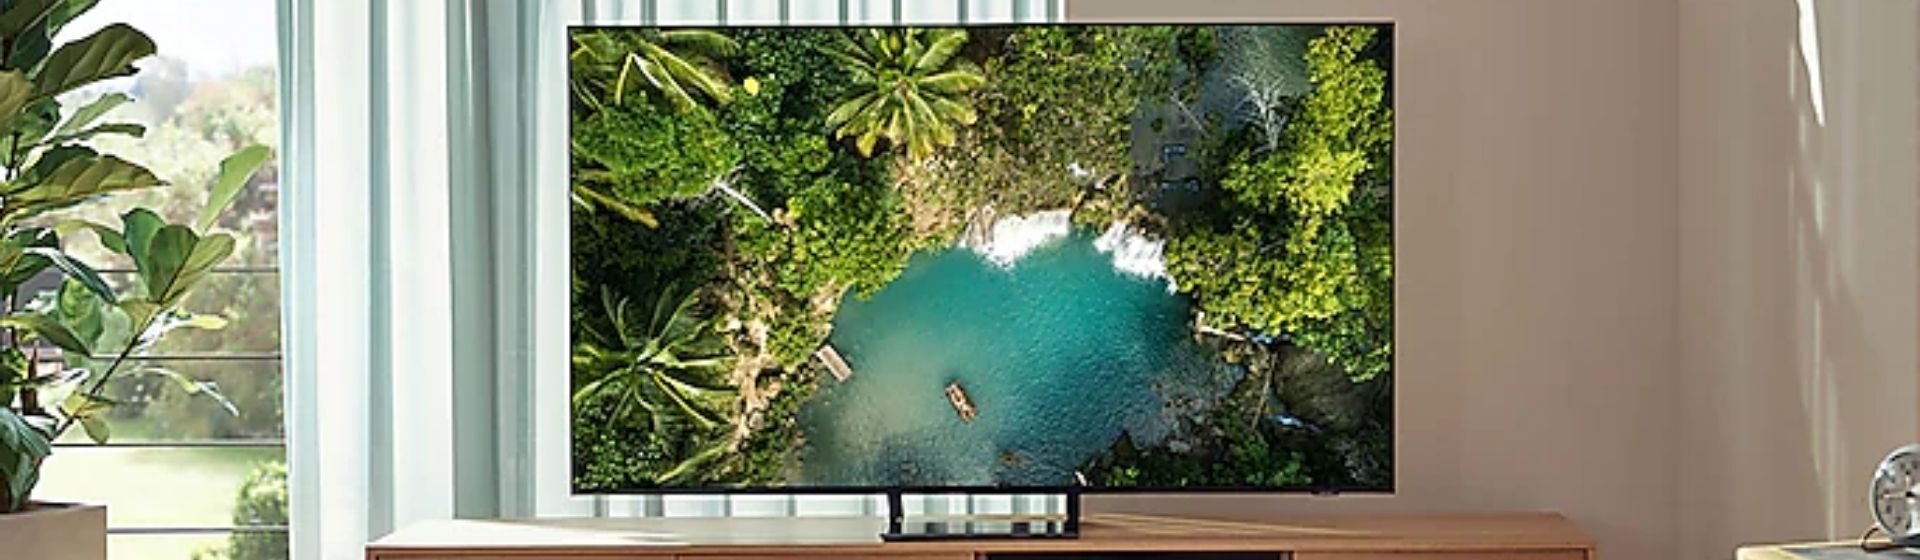 TV Samsung AU9000 é boa? Saiba tudo sobre essa televisão 4K